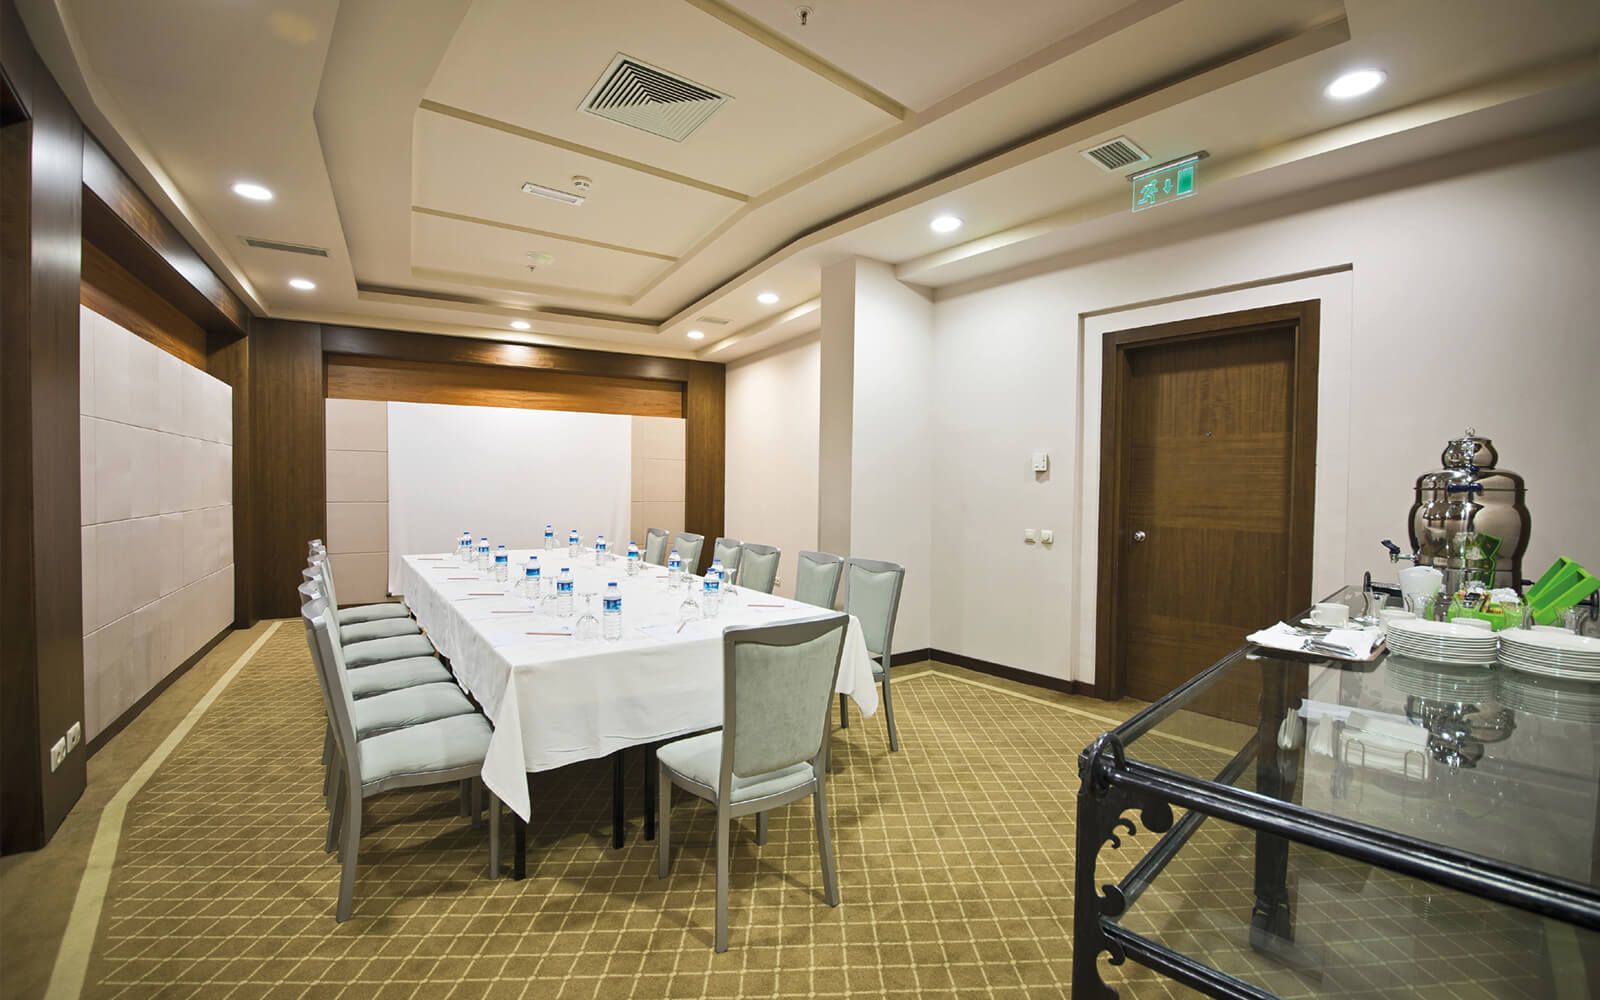 Limak Lara De Luxe Hotel & Resort , Meeting Rooms